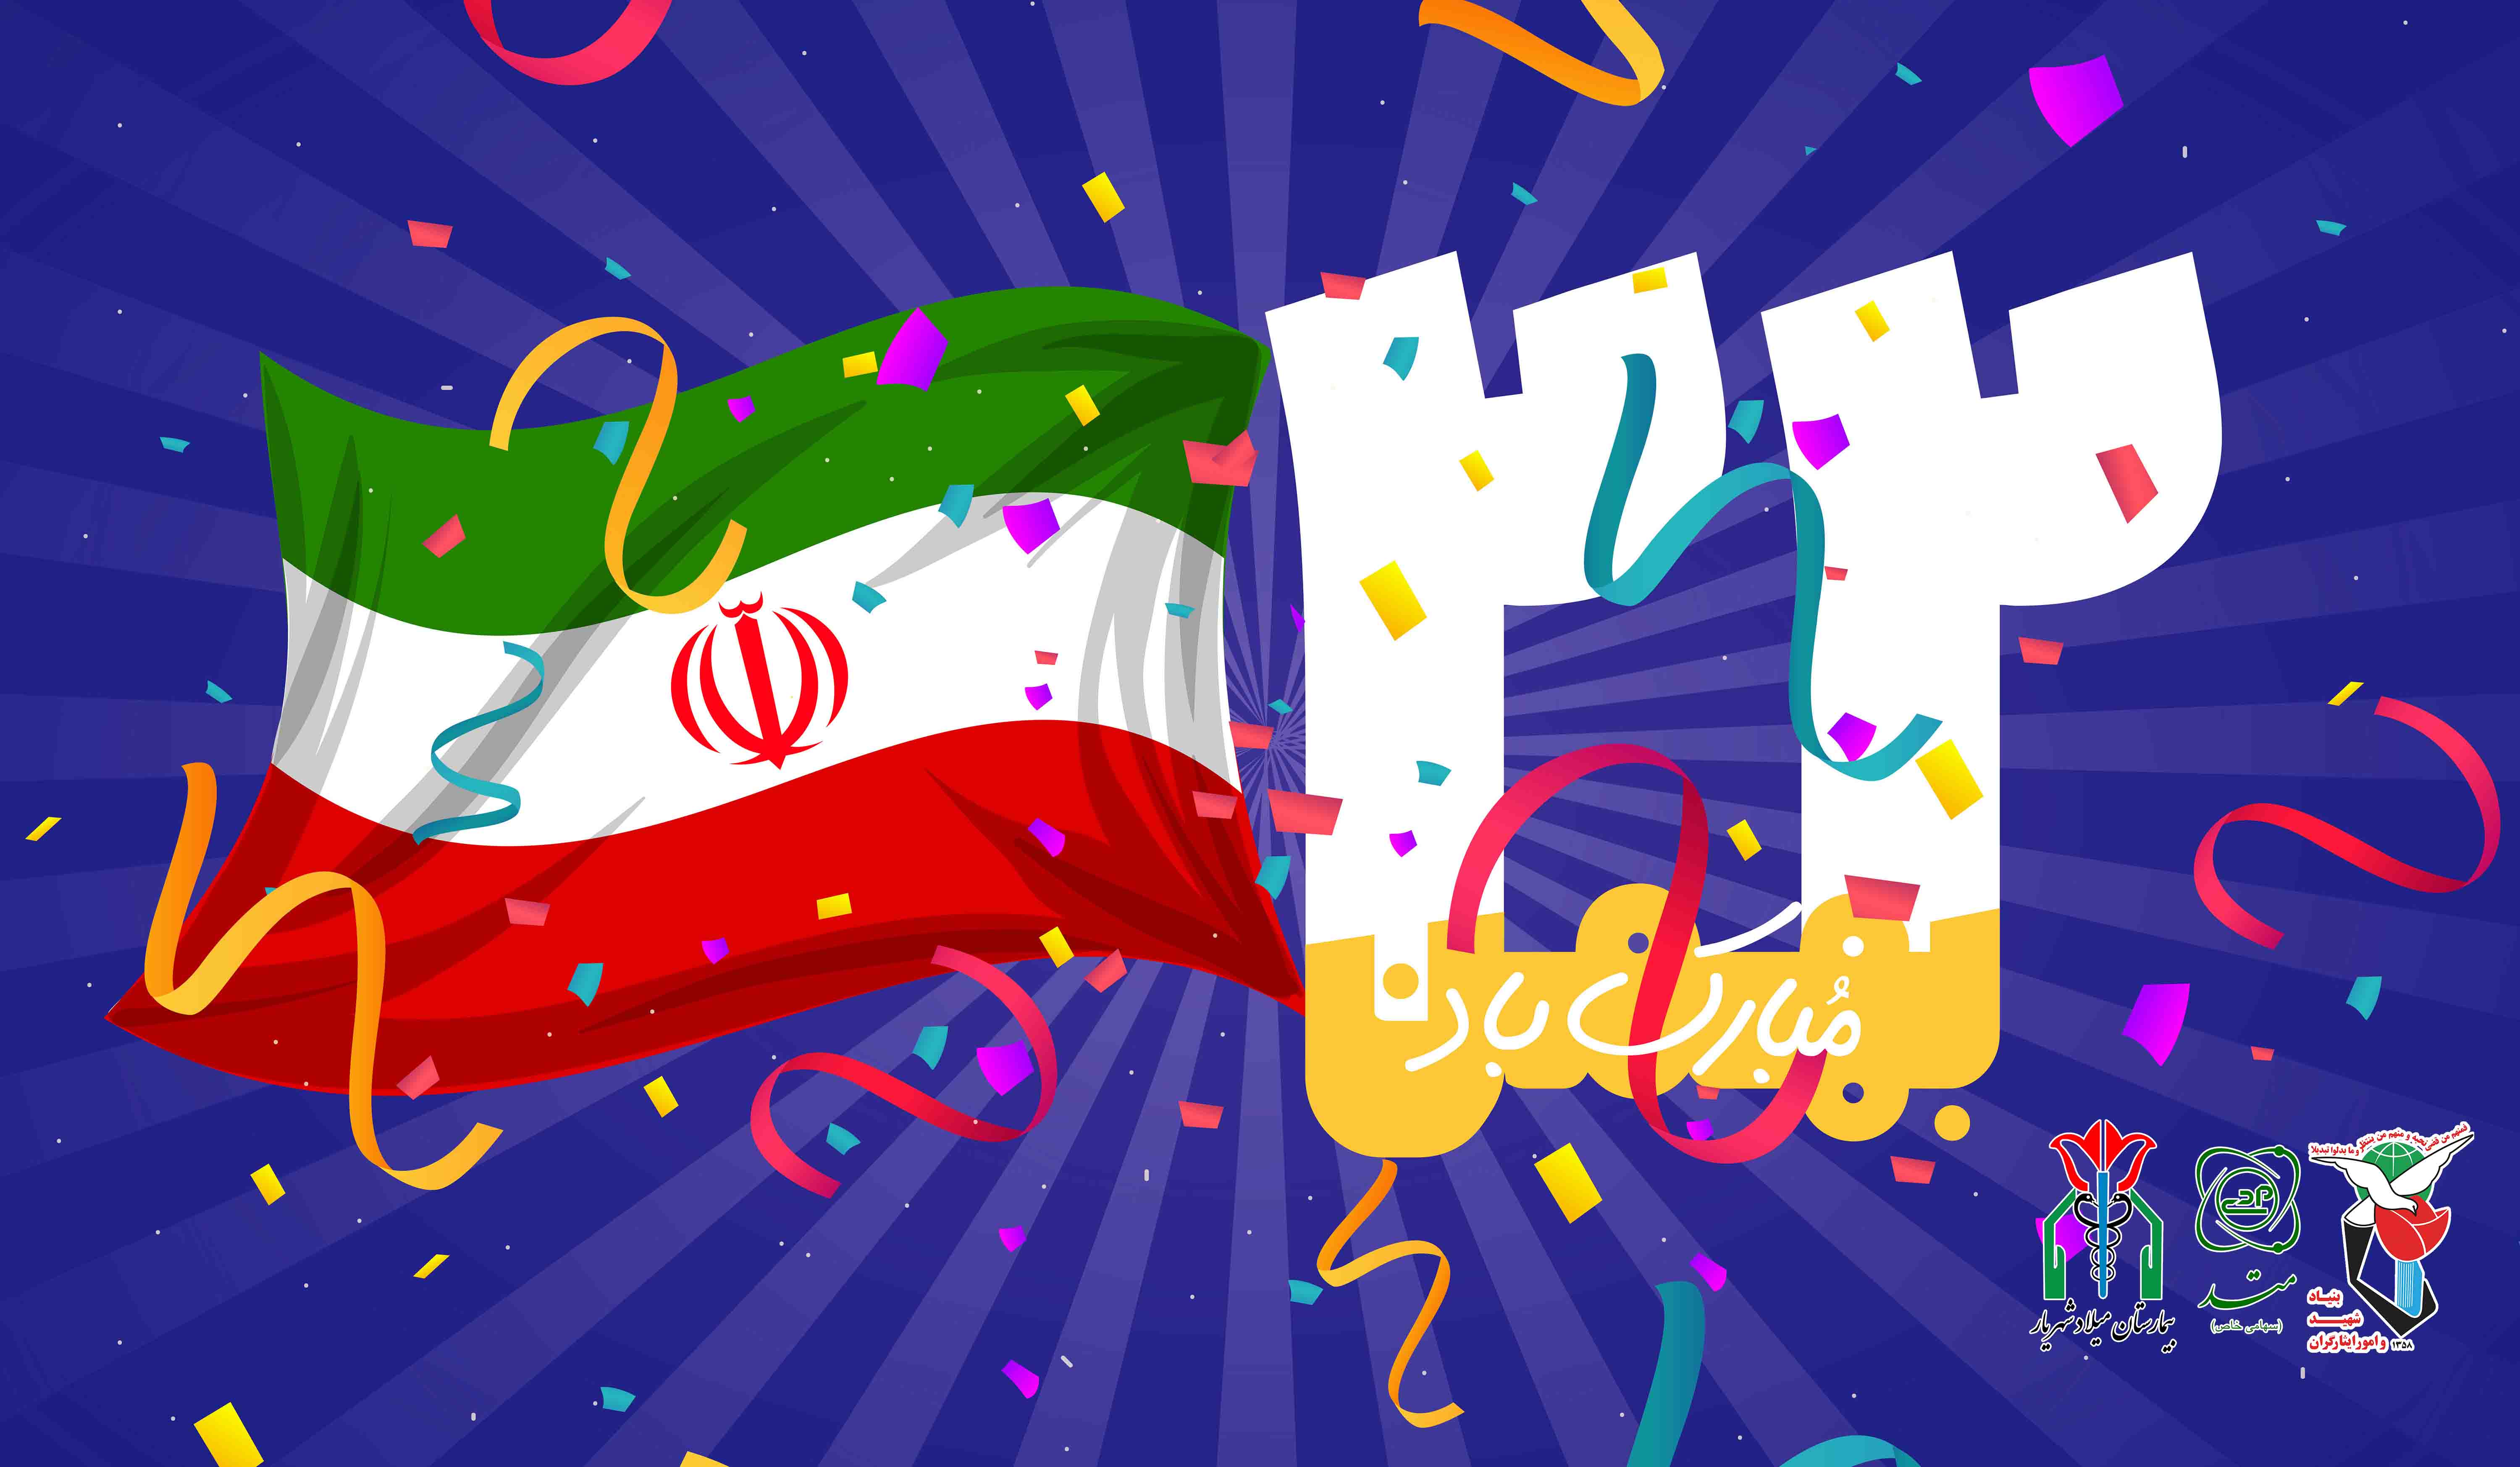 تبریک ریاست بیمارستان میلاد شهریار بمناسبت فرارسیدن سالگرد پیروزی انقلاب اسلامی ایران